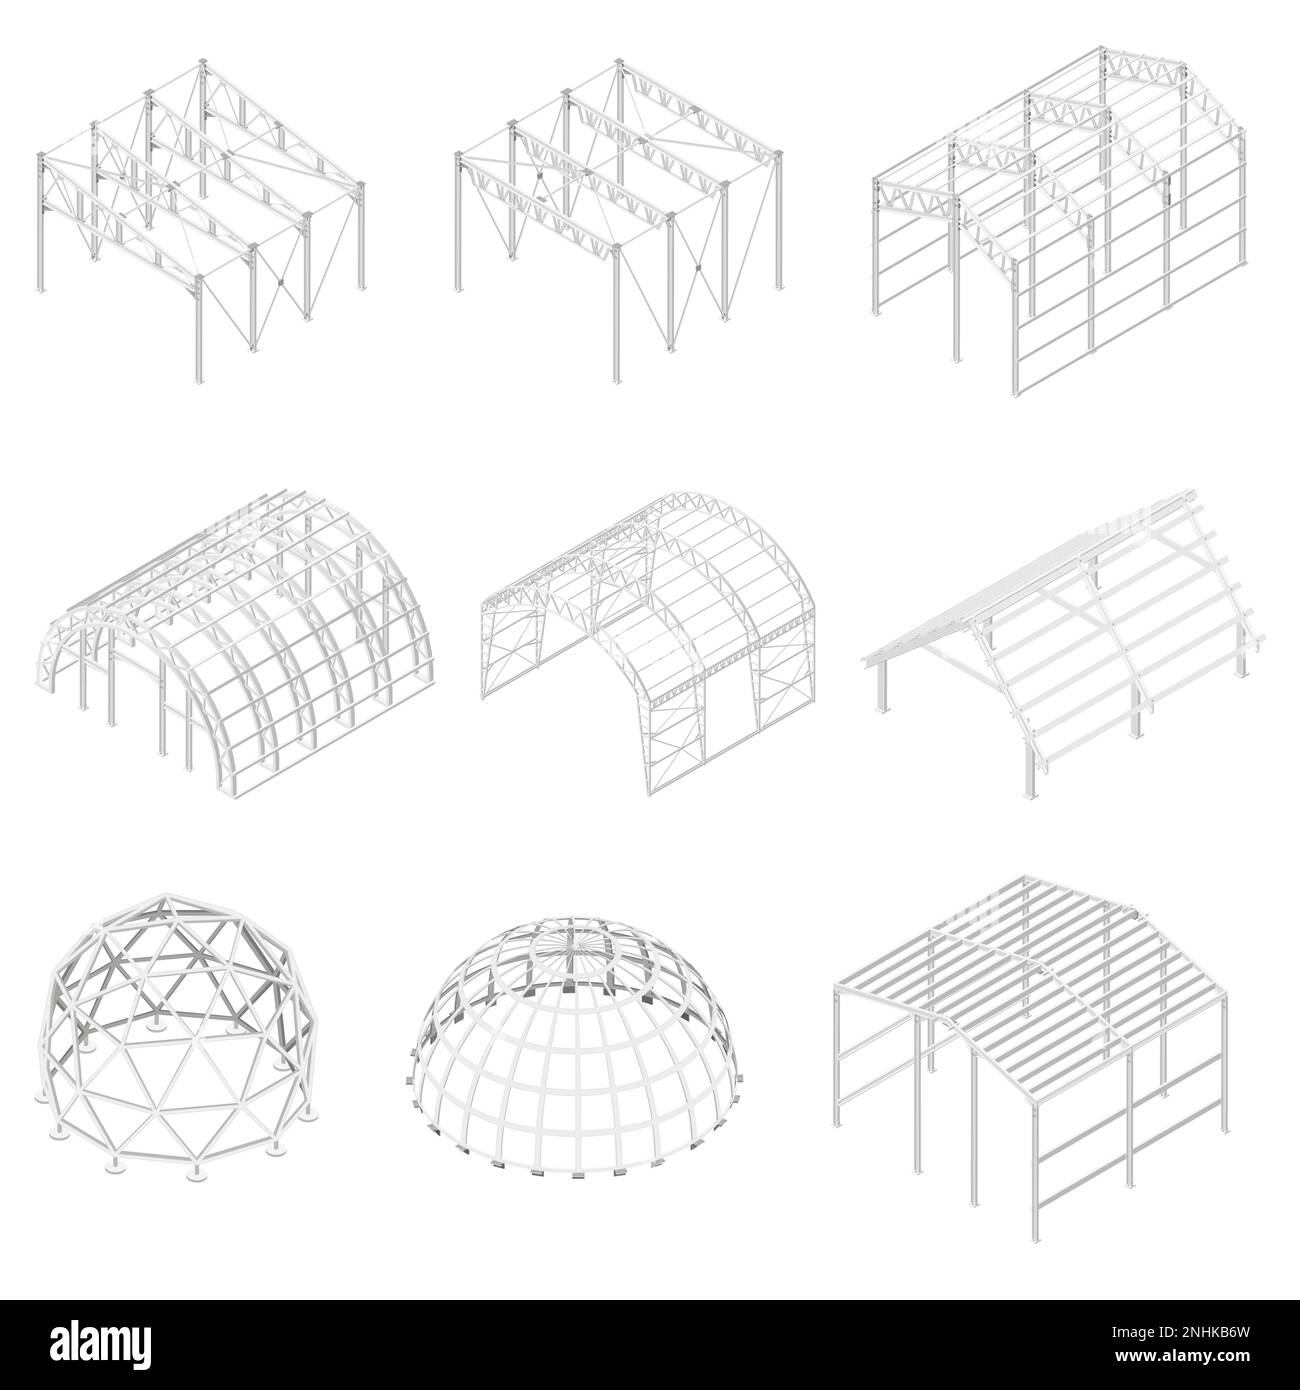 Costruzioni metalliche con simboli di edifici industriali illustrazione vettoriale isometrica isolata Illustrazione Vettoriale